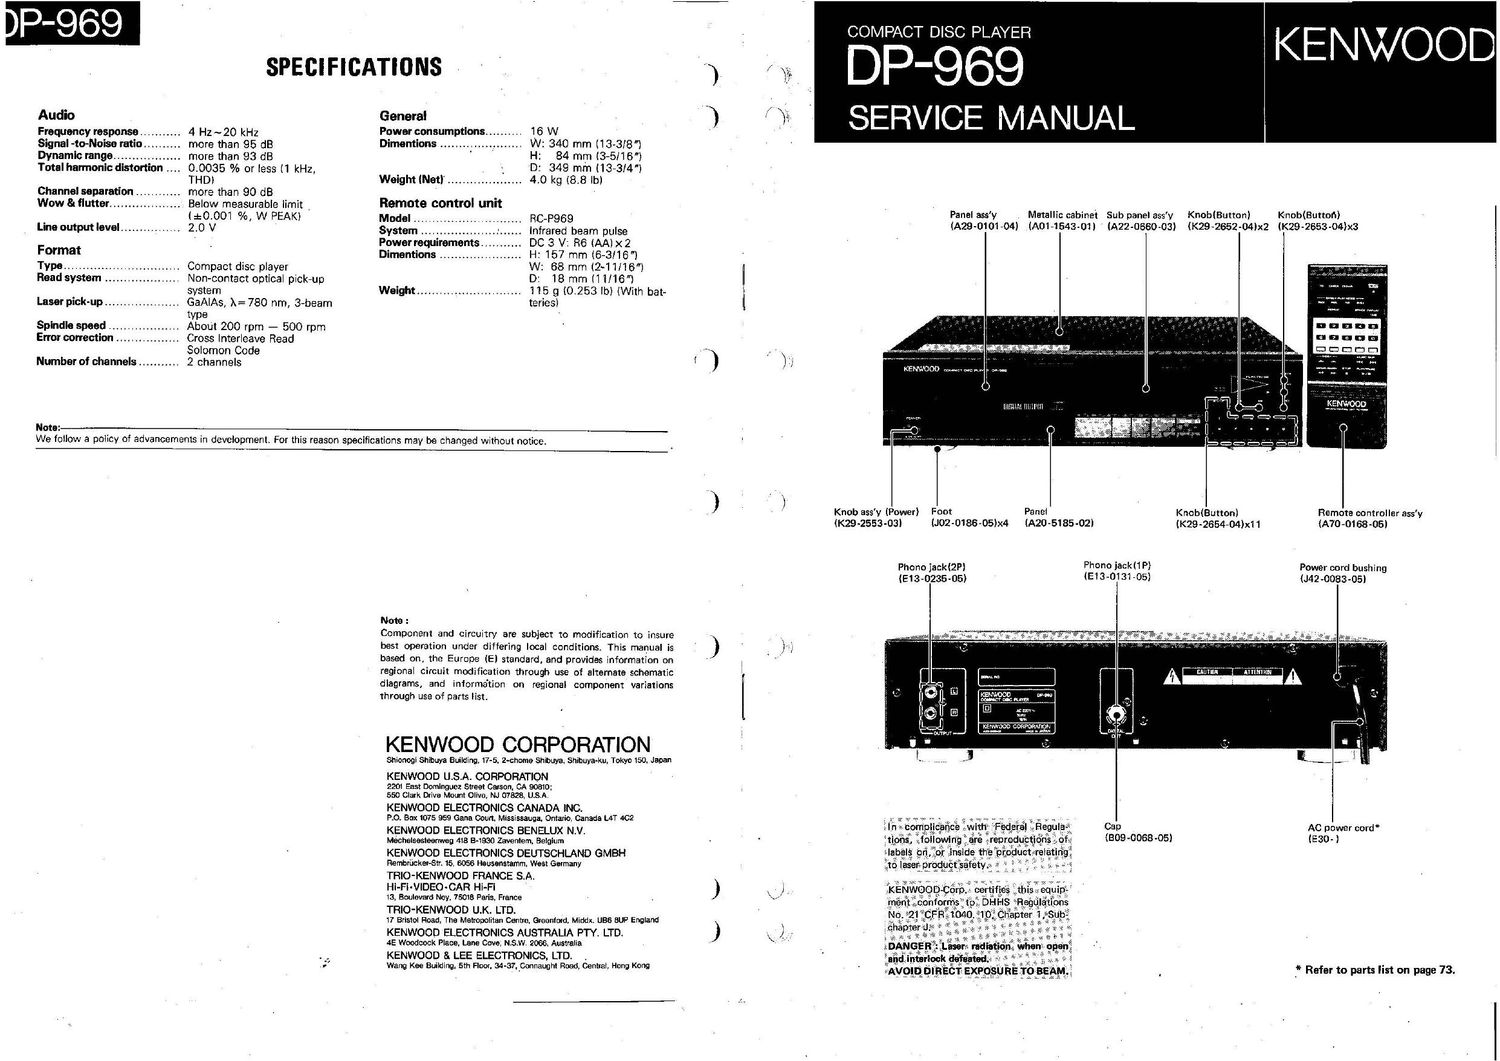 Kenwood DP 969 Service Manual